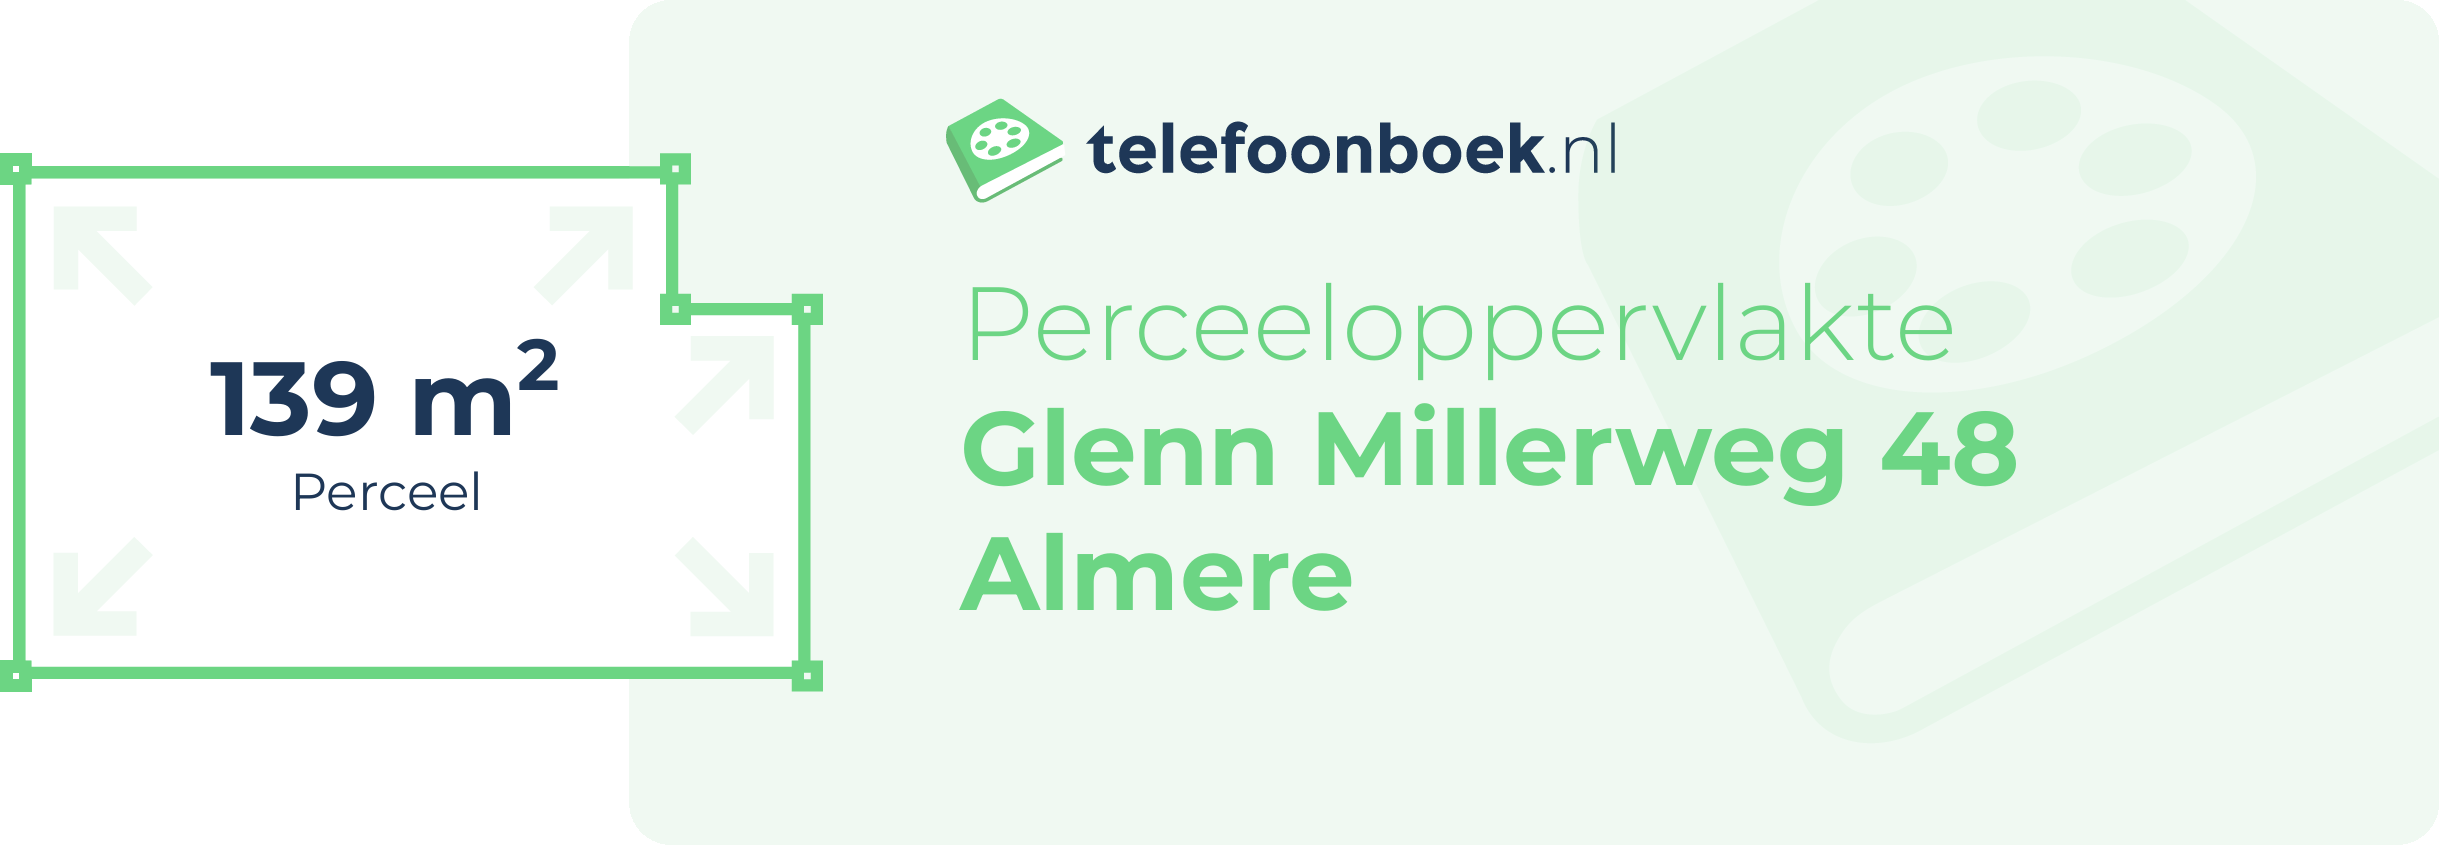 Perceeloppervlakte Glenn Millerweg 48 Almere